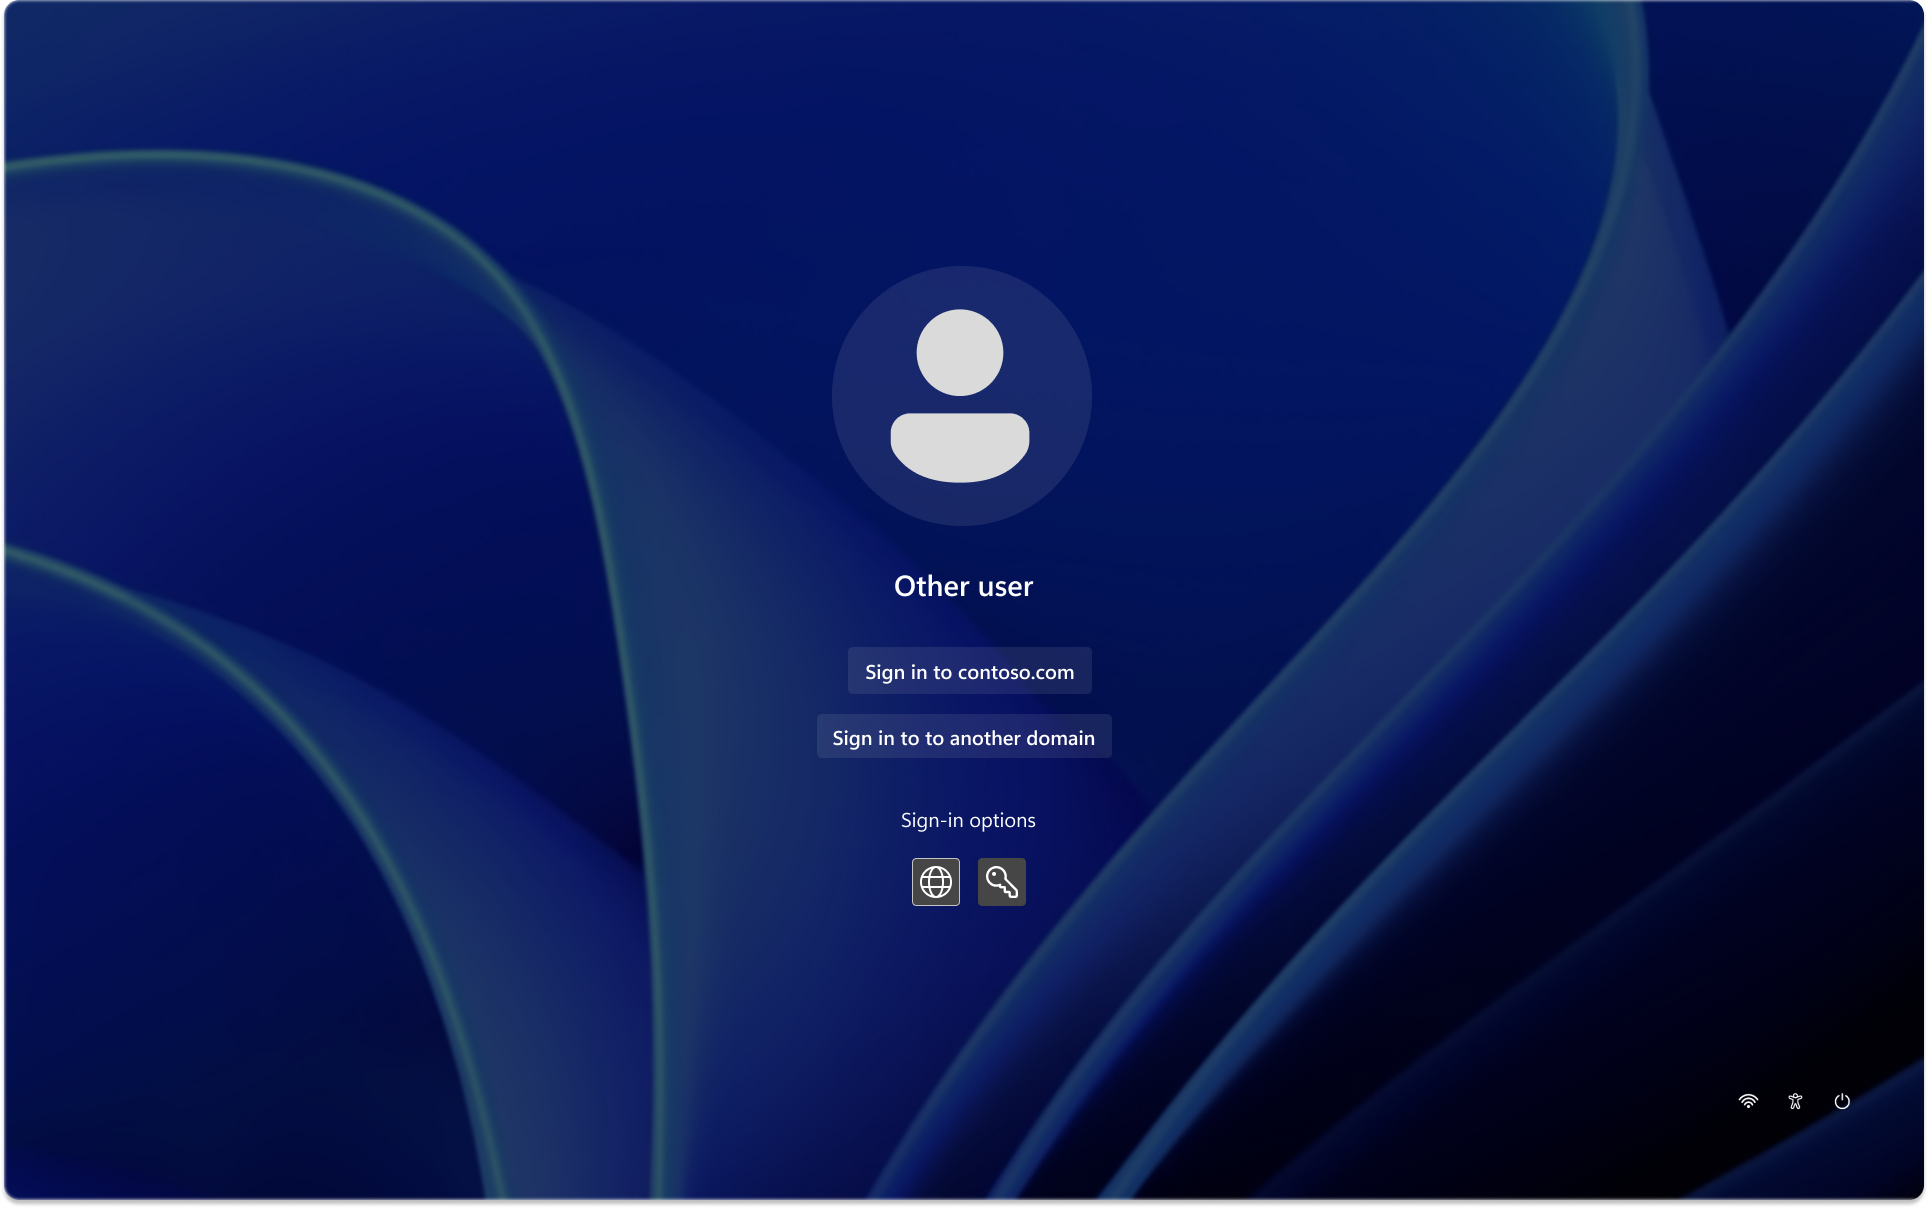 Снимок экрана: экран блокировки Windows с настроенным клиентом.